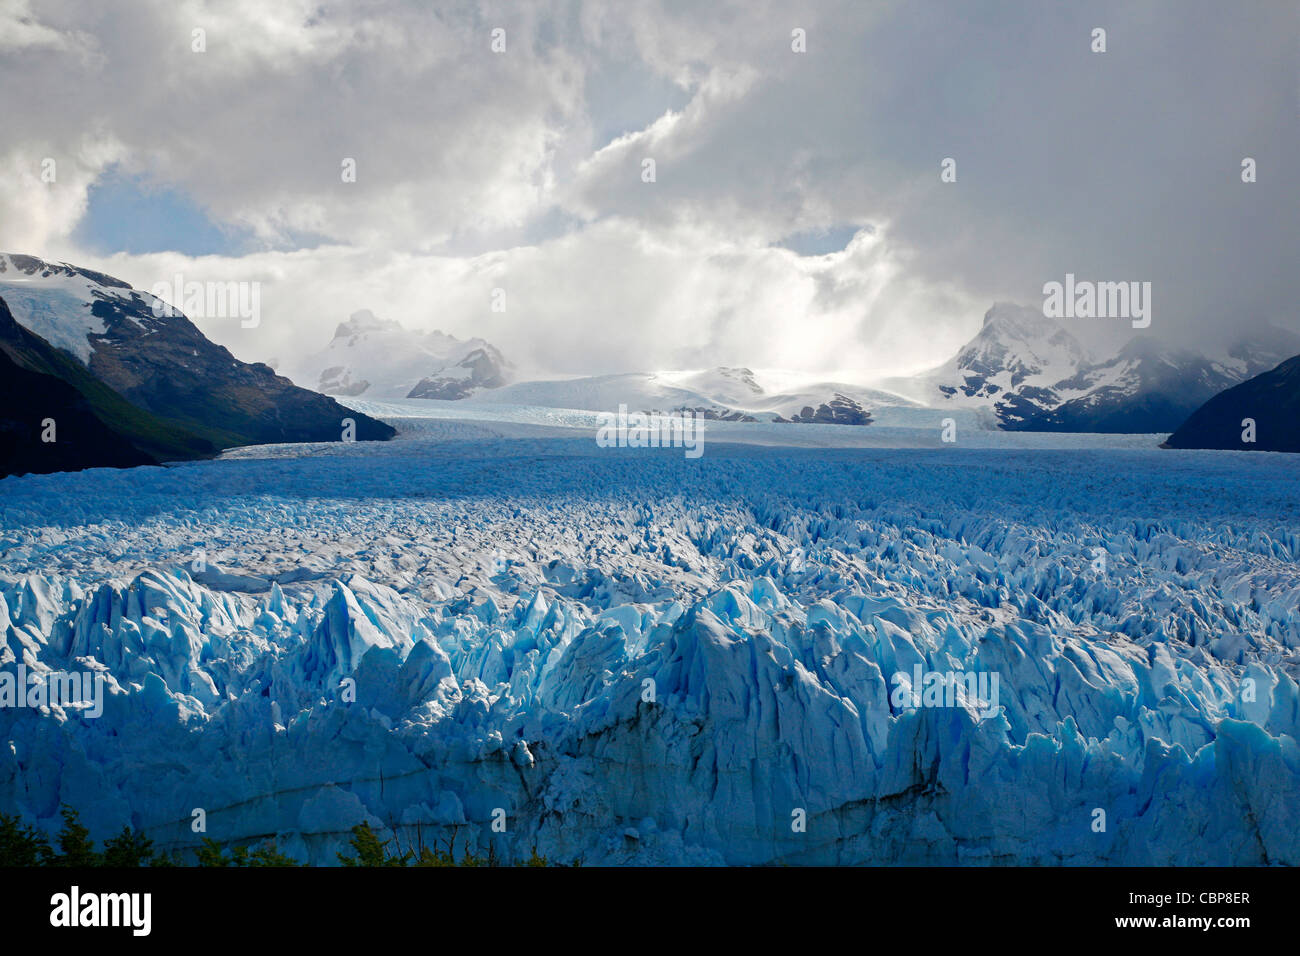 Le glacier Perito Moreno. Le Parc National Los Glaciares, El Calafate, province de Santa Cruz. La Patagonie. L'Argentine. Banque D'Images